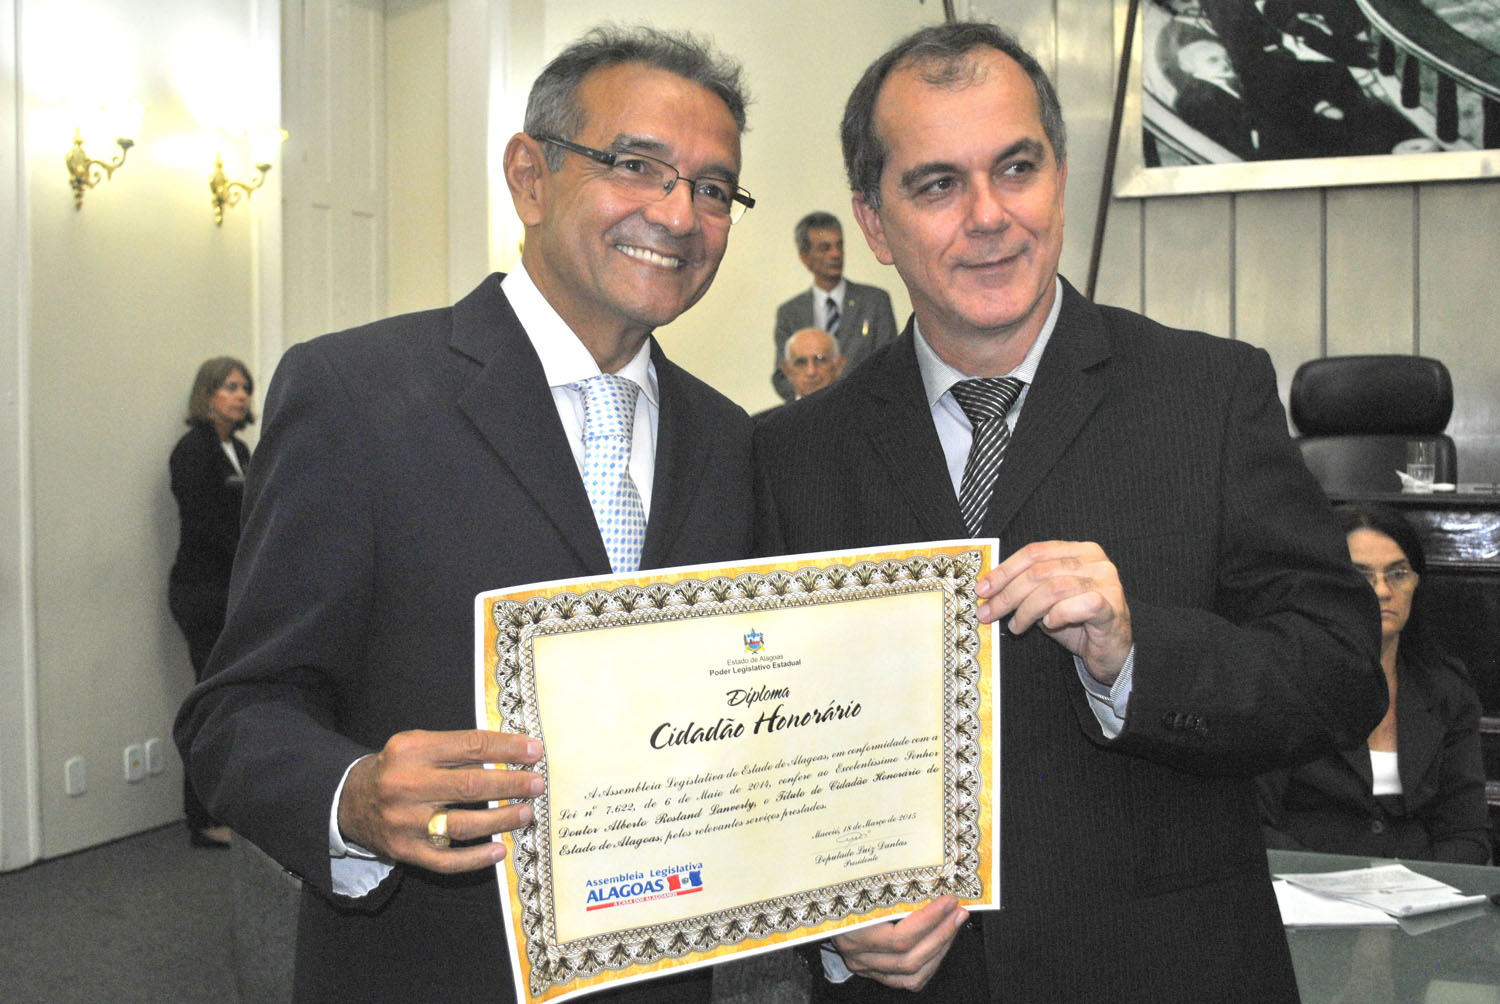 Rostand Lanverly recebe o título de cidadão honorário de Alagoas pelo deputado Ronaldo Medeiros.JPG